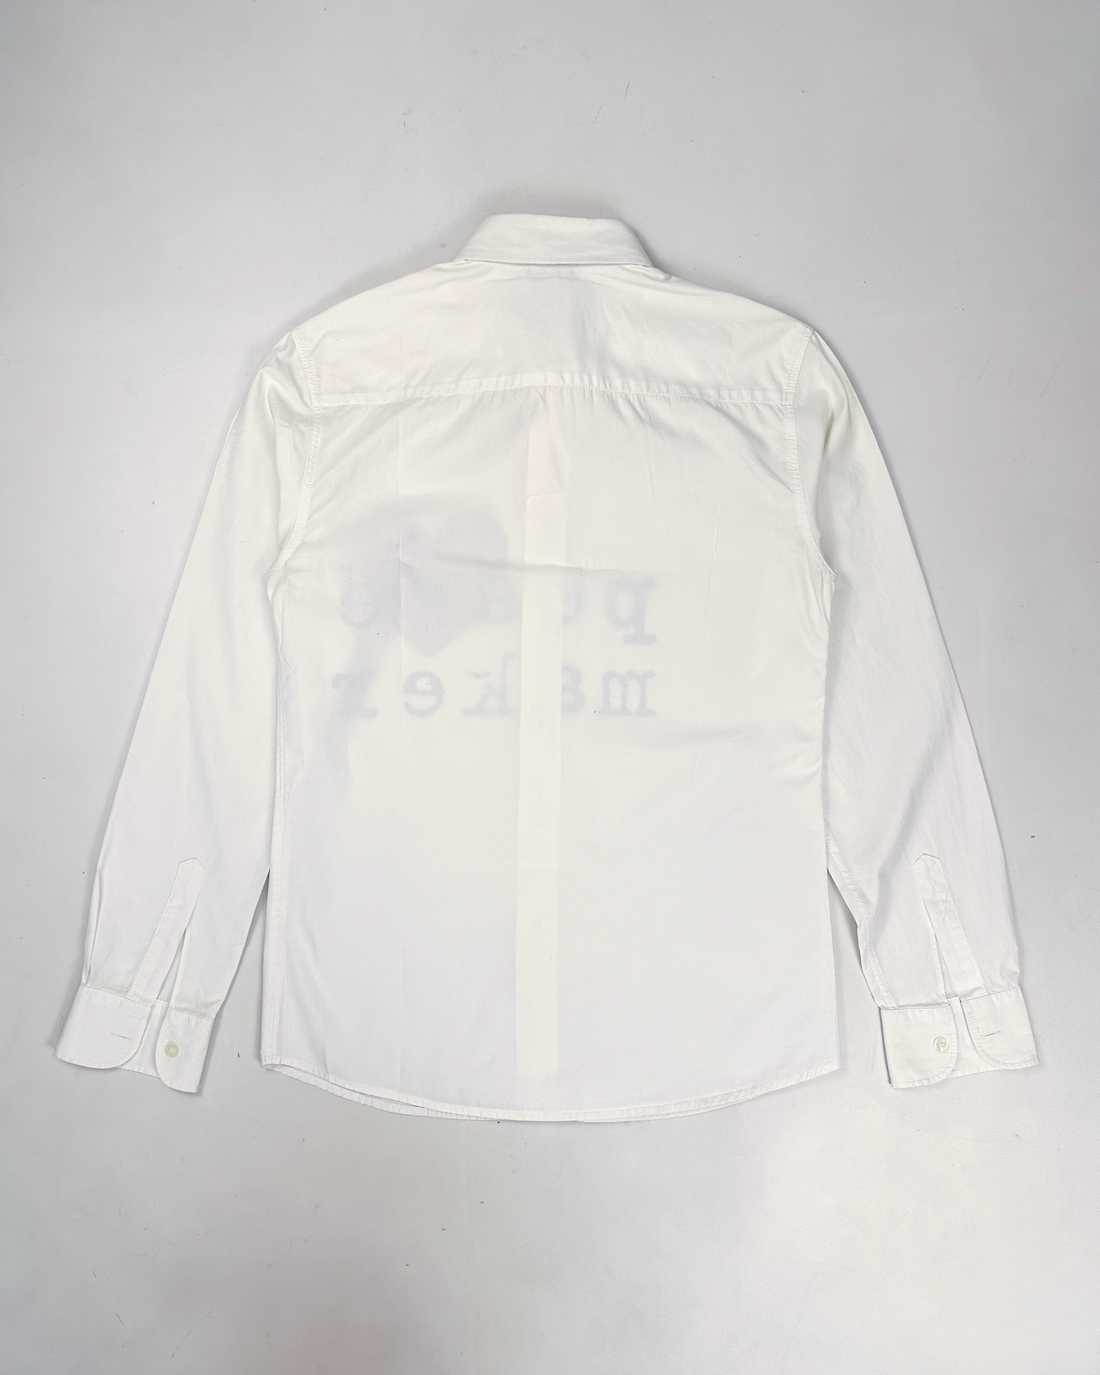 Moschino "Peace Maker" White Shirt 2000's